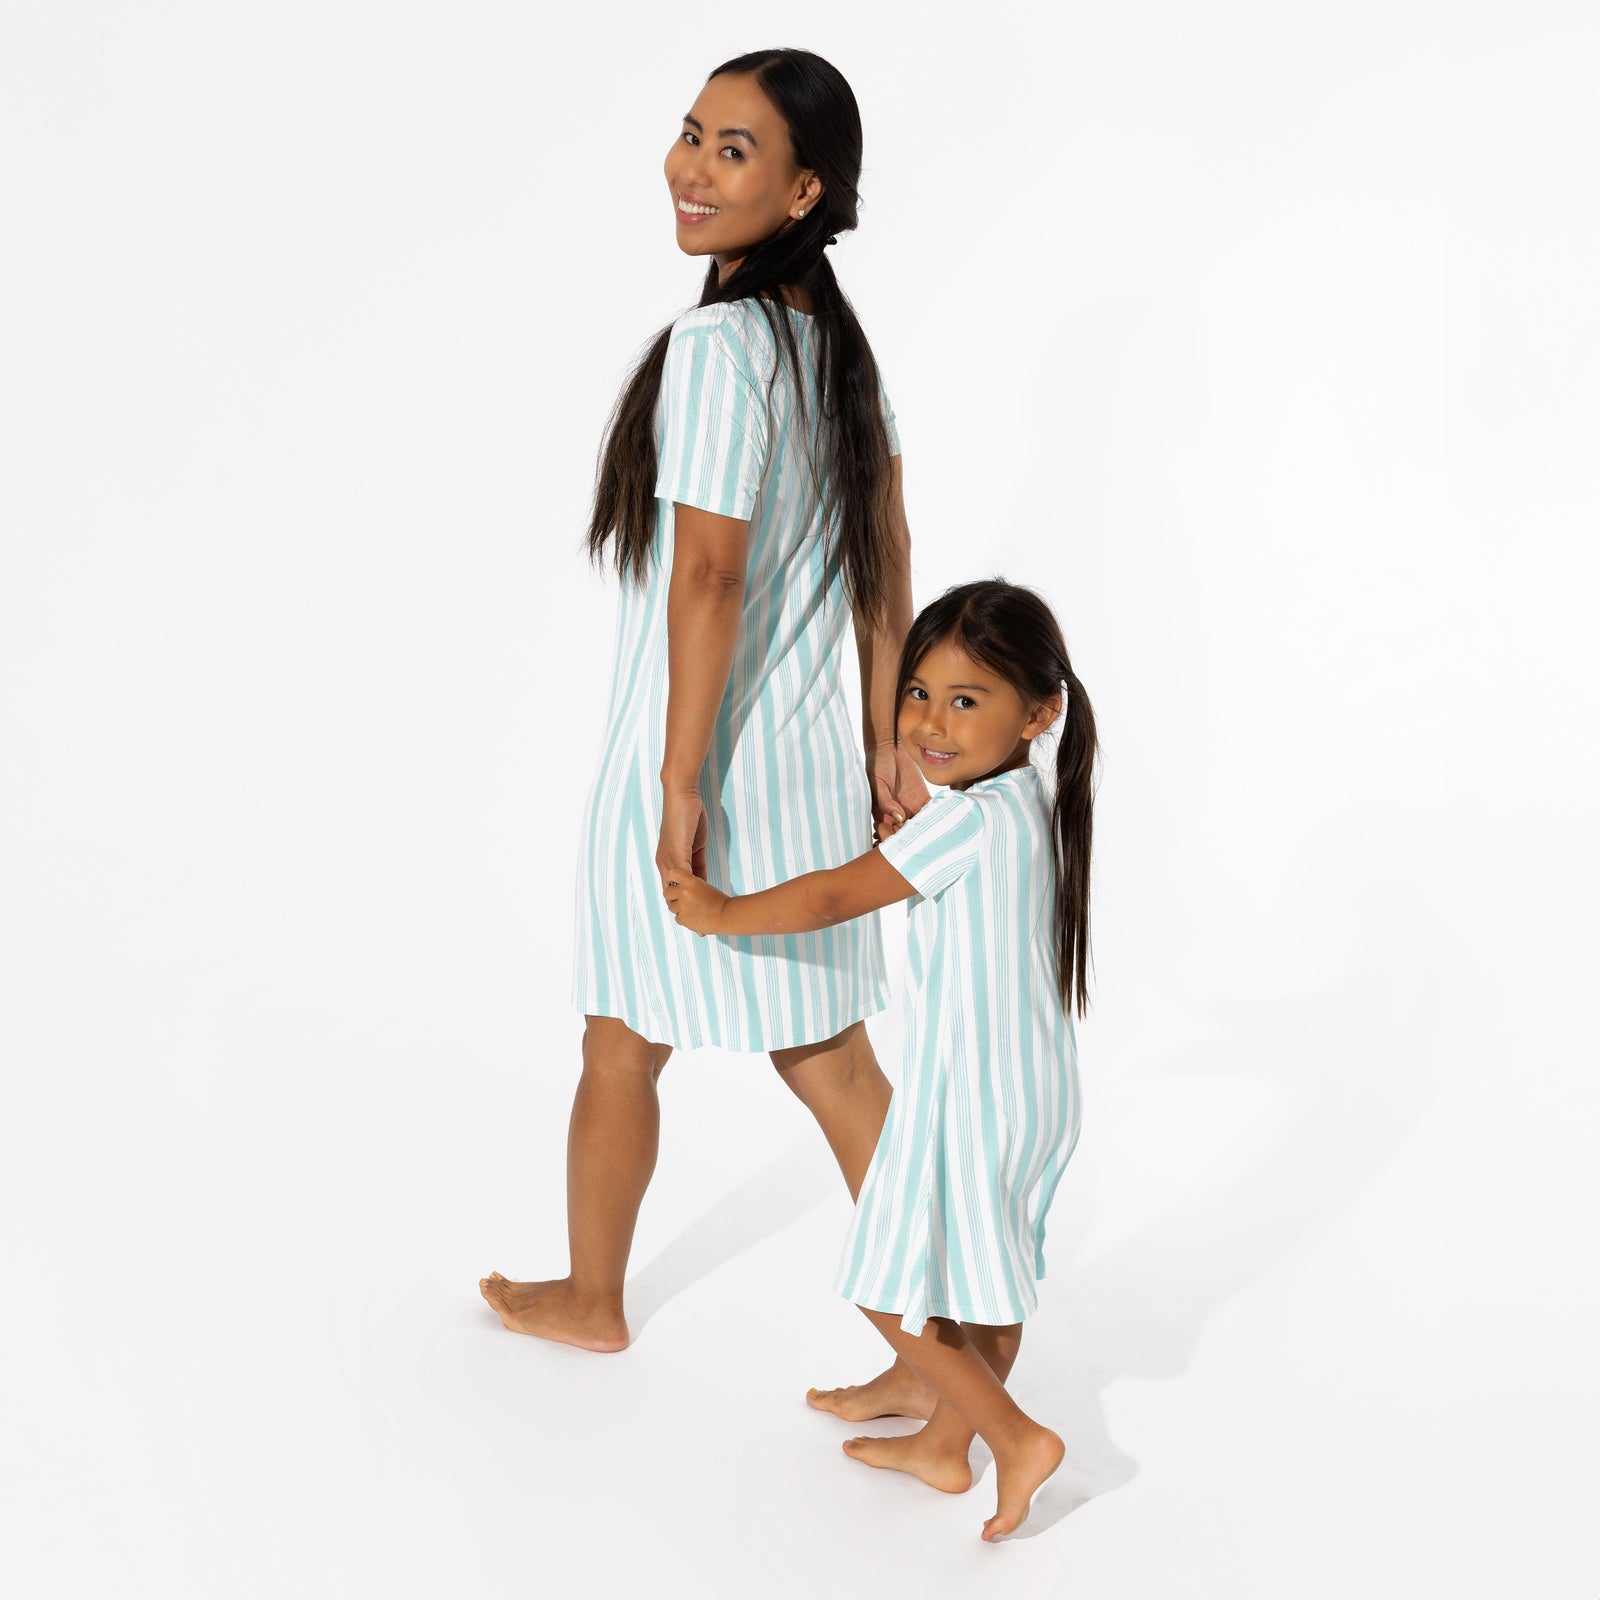 Slumber Stripes Bamboo Girls' Short Sleeve Dress